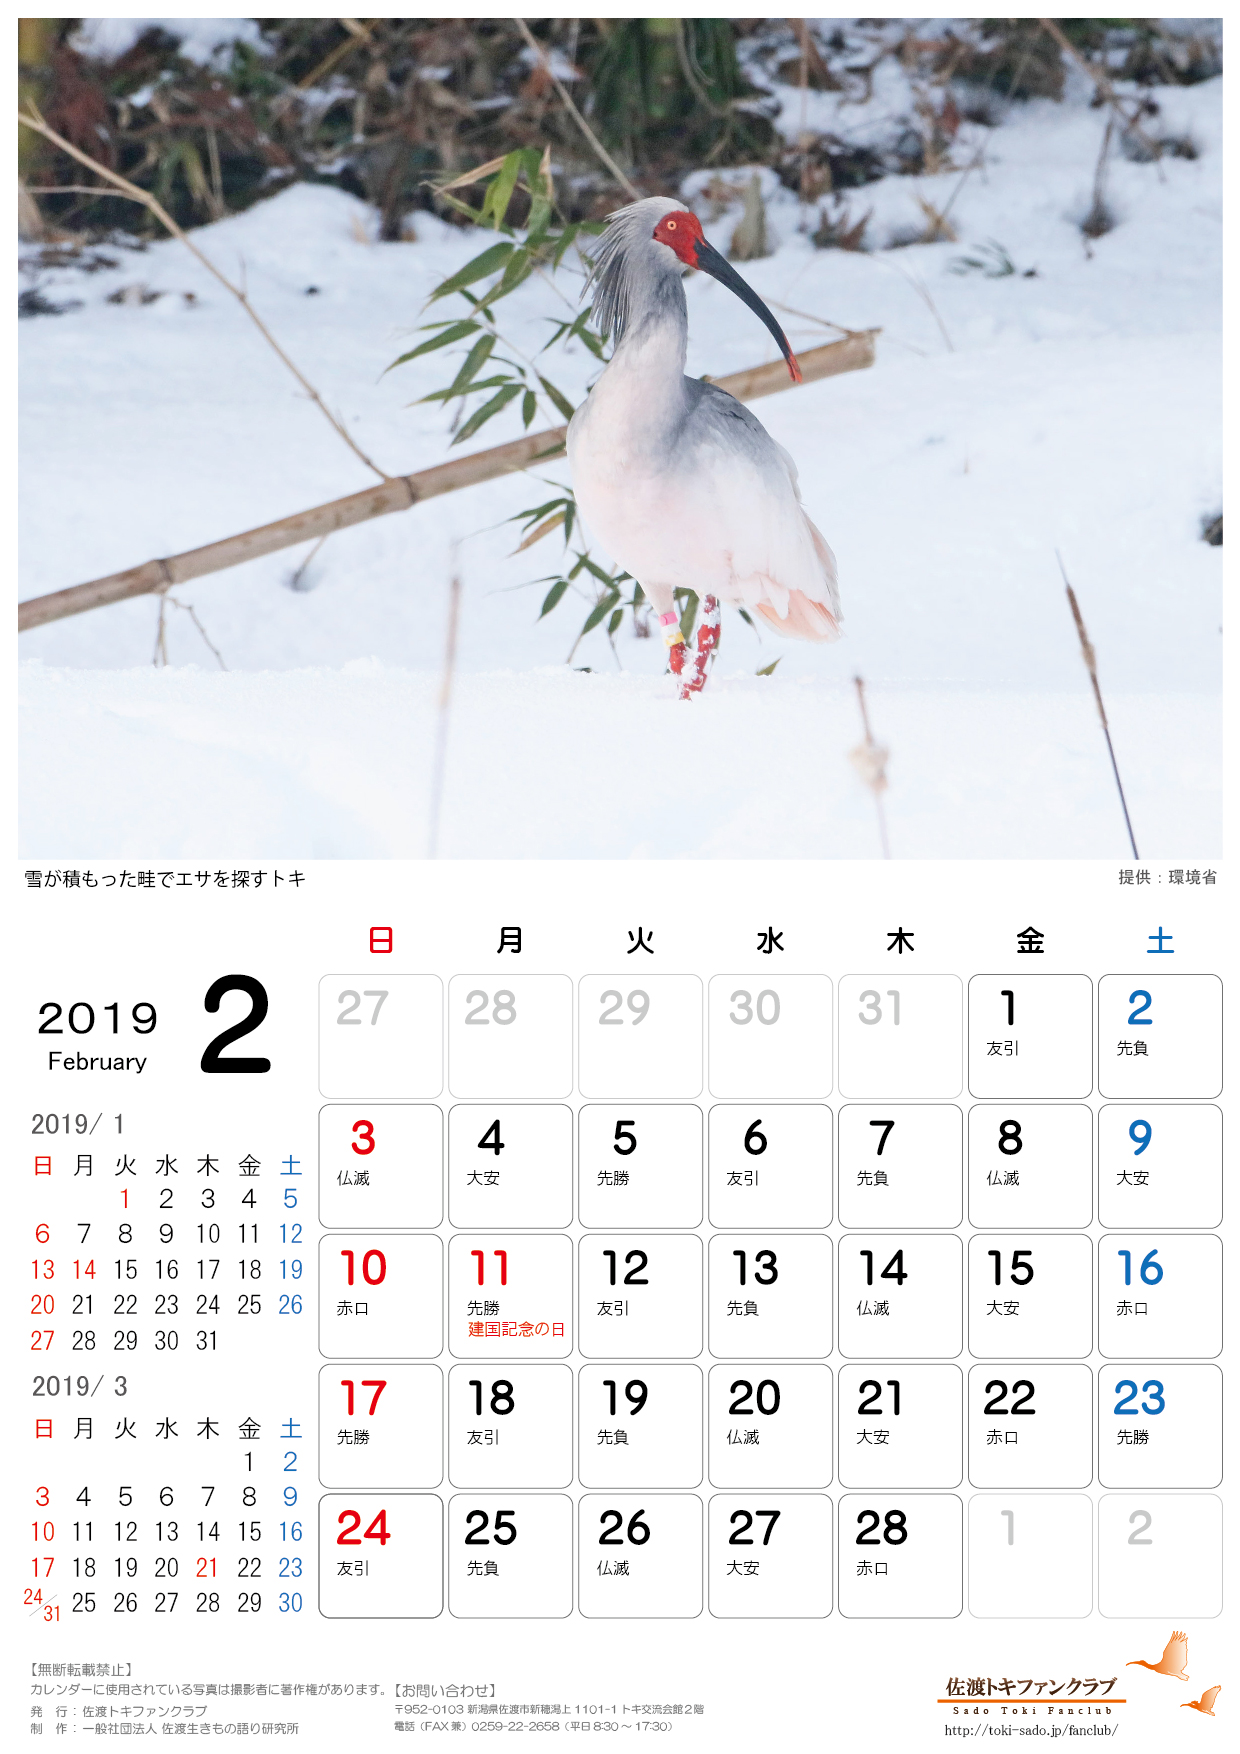 2019年トキカレンダー1月 2月無料配信のお知らせ 佐渡トキファンクラブ